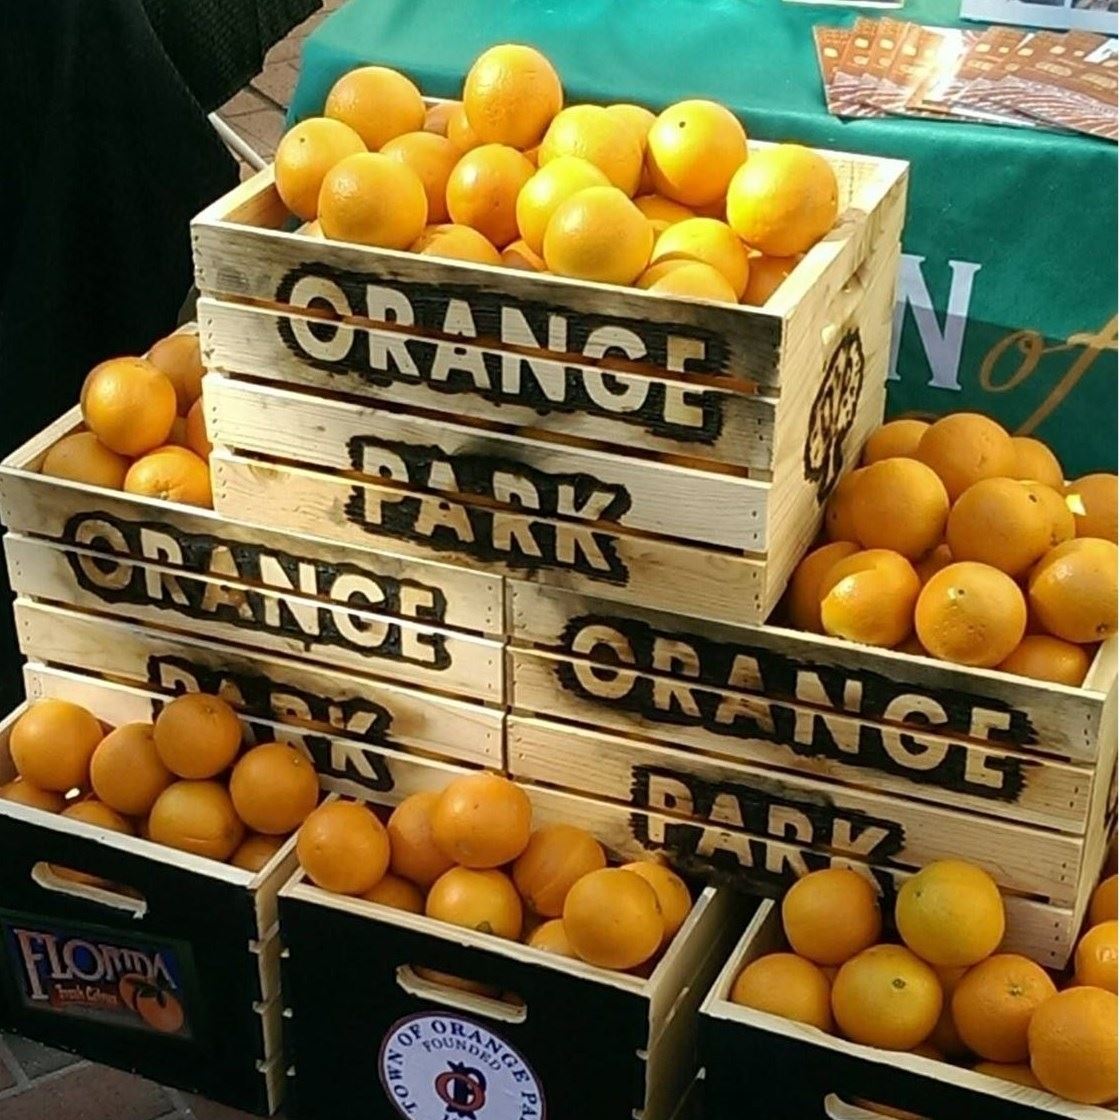 6 crates full of oranges